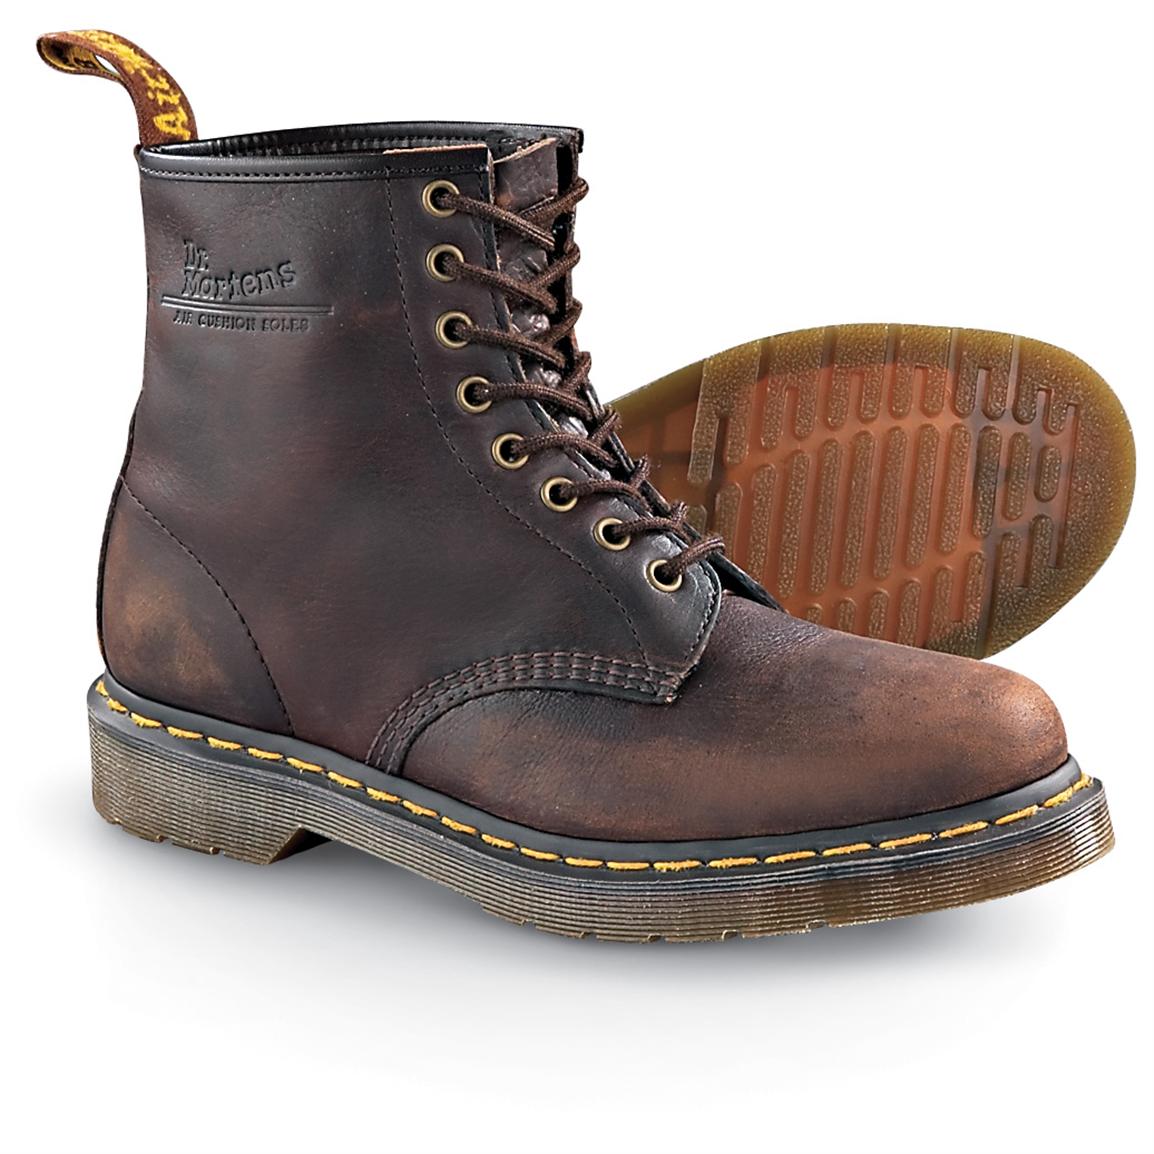 Men's Dr. Martensâ¢ Boots, Brown - 128673, Casual Shoes at Sportsman's Guide